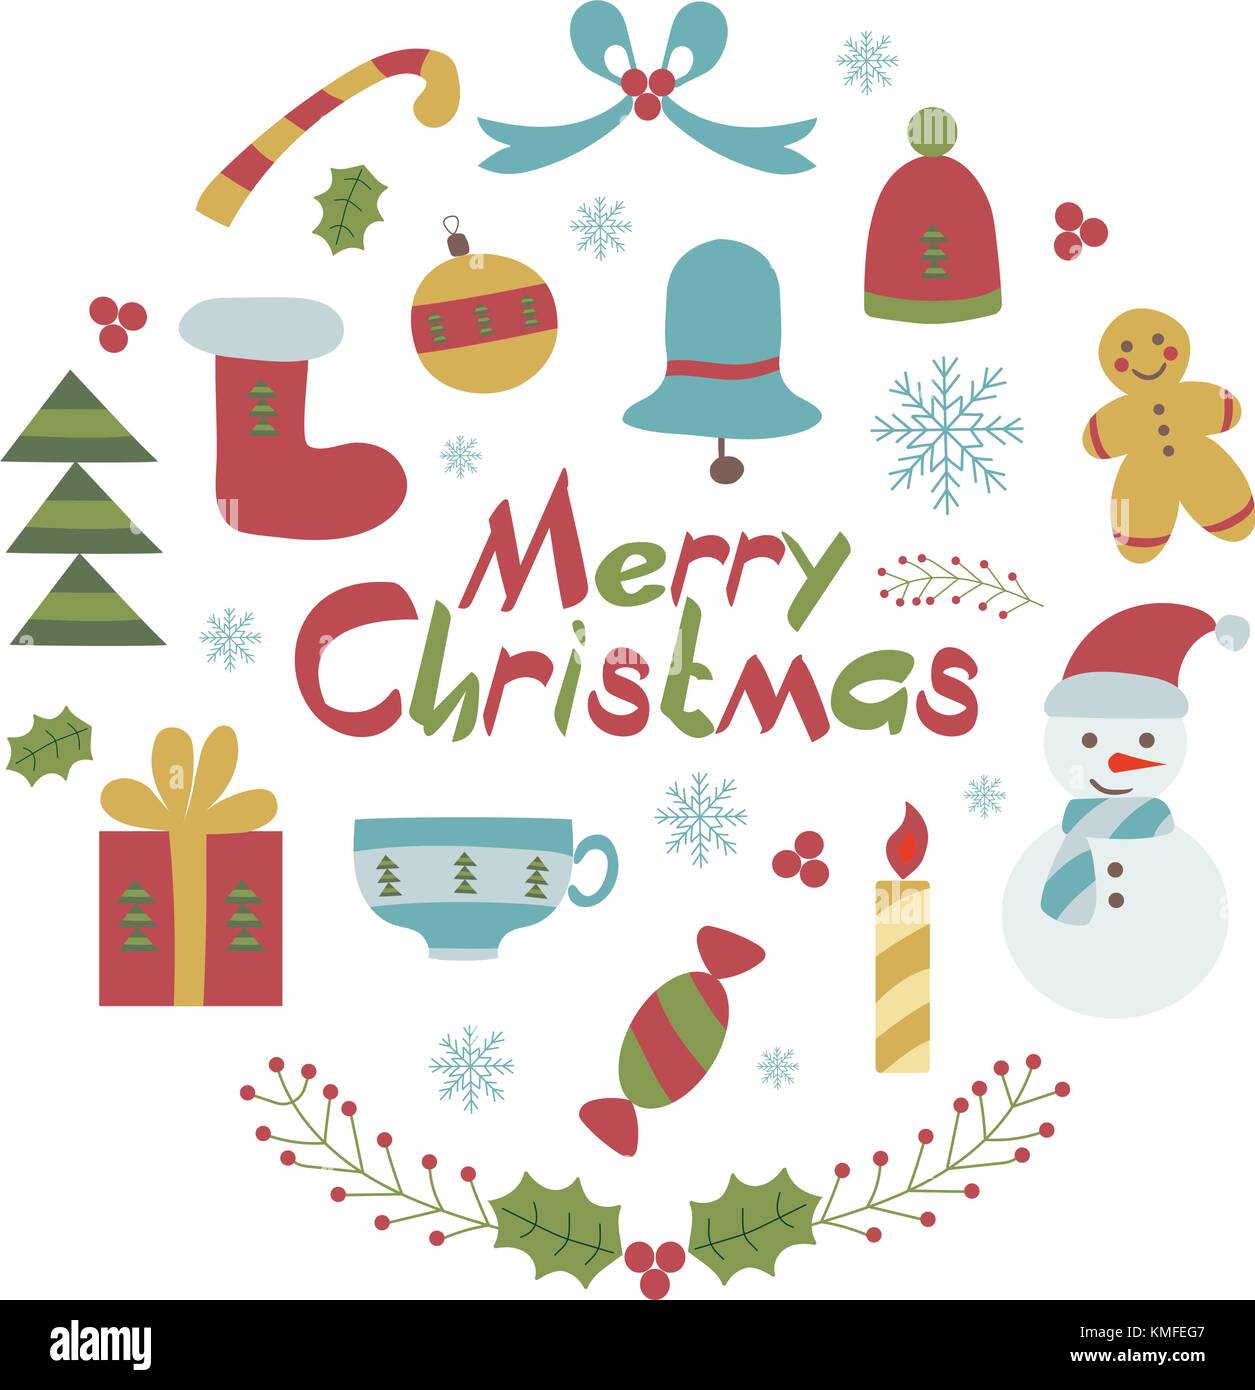 Frohe Weihnachten kindisch Karte mit traditionellen xmas Symbole und Elemente mit Gratulation Text. Cartoon oder doodle Stil. Stock Vektor